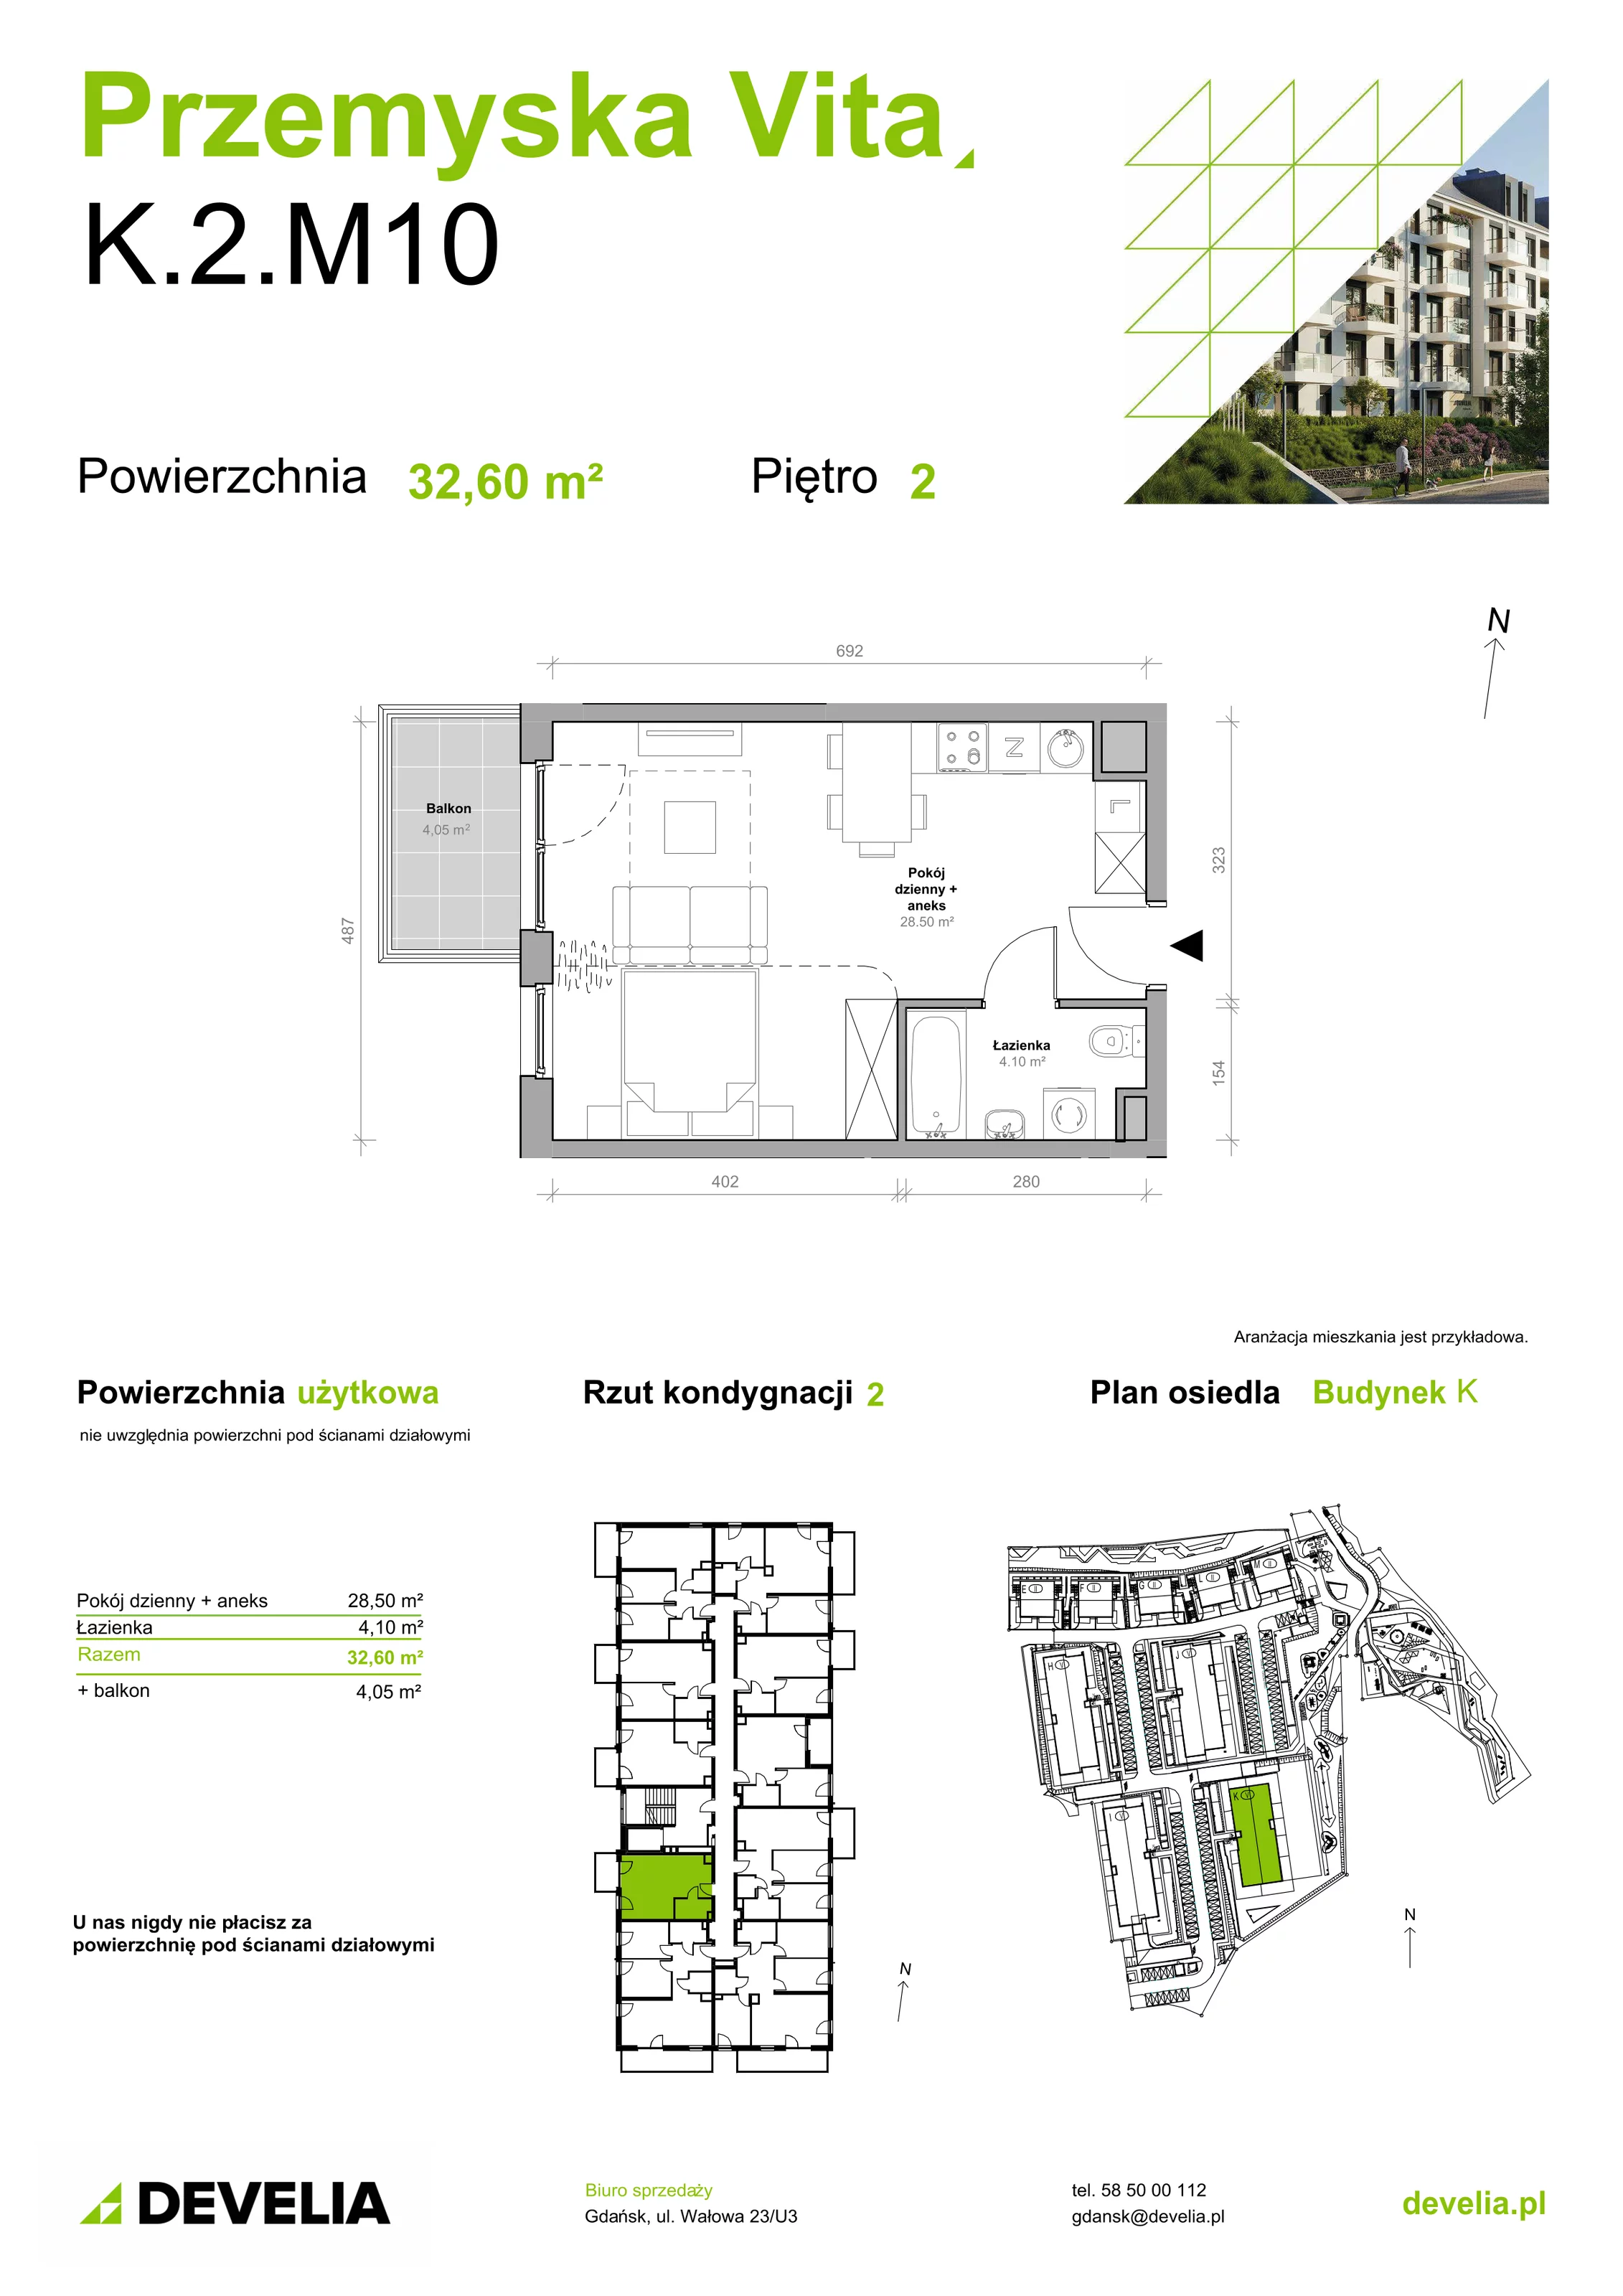 Mieszkanie 32,60 m², piętro 2, oferta nr K.2.M10, Przemyska Vita, Gdańsk, Ujeścisko-Łostowice, Ujeścisko, ul. Przemyska 37